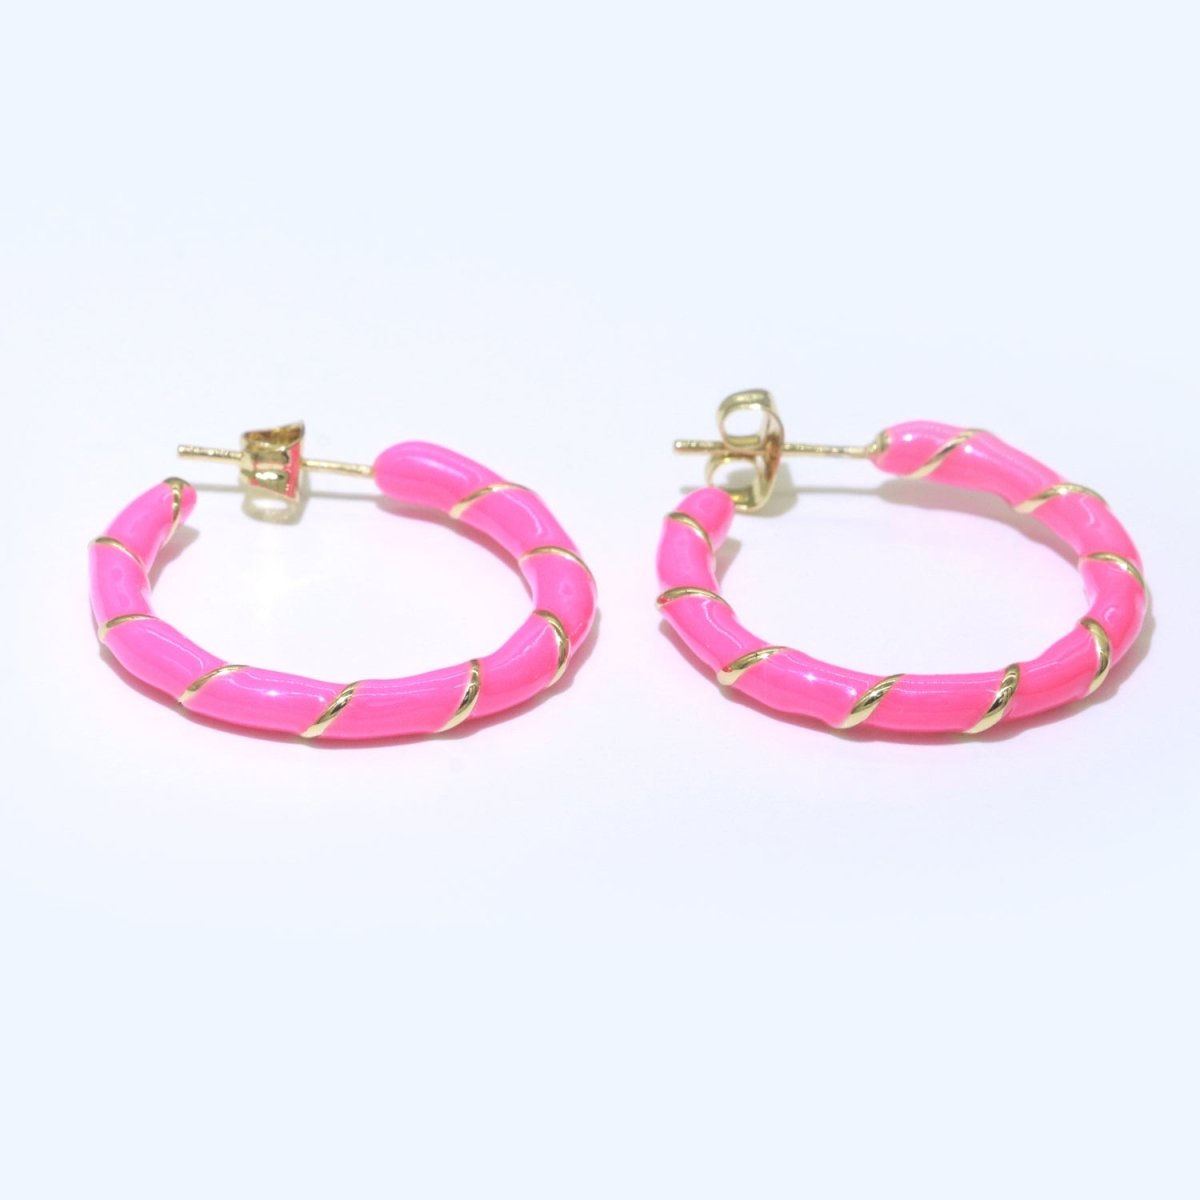 Barbiecore Hot Pink Enamel Hoop Earring with Gold Swirl 26mm Hoop earring Jewelry Gift T-003 - DLUXCA